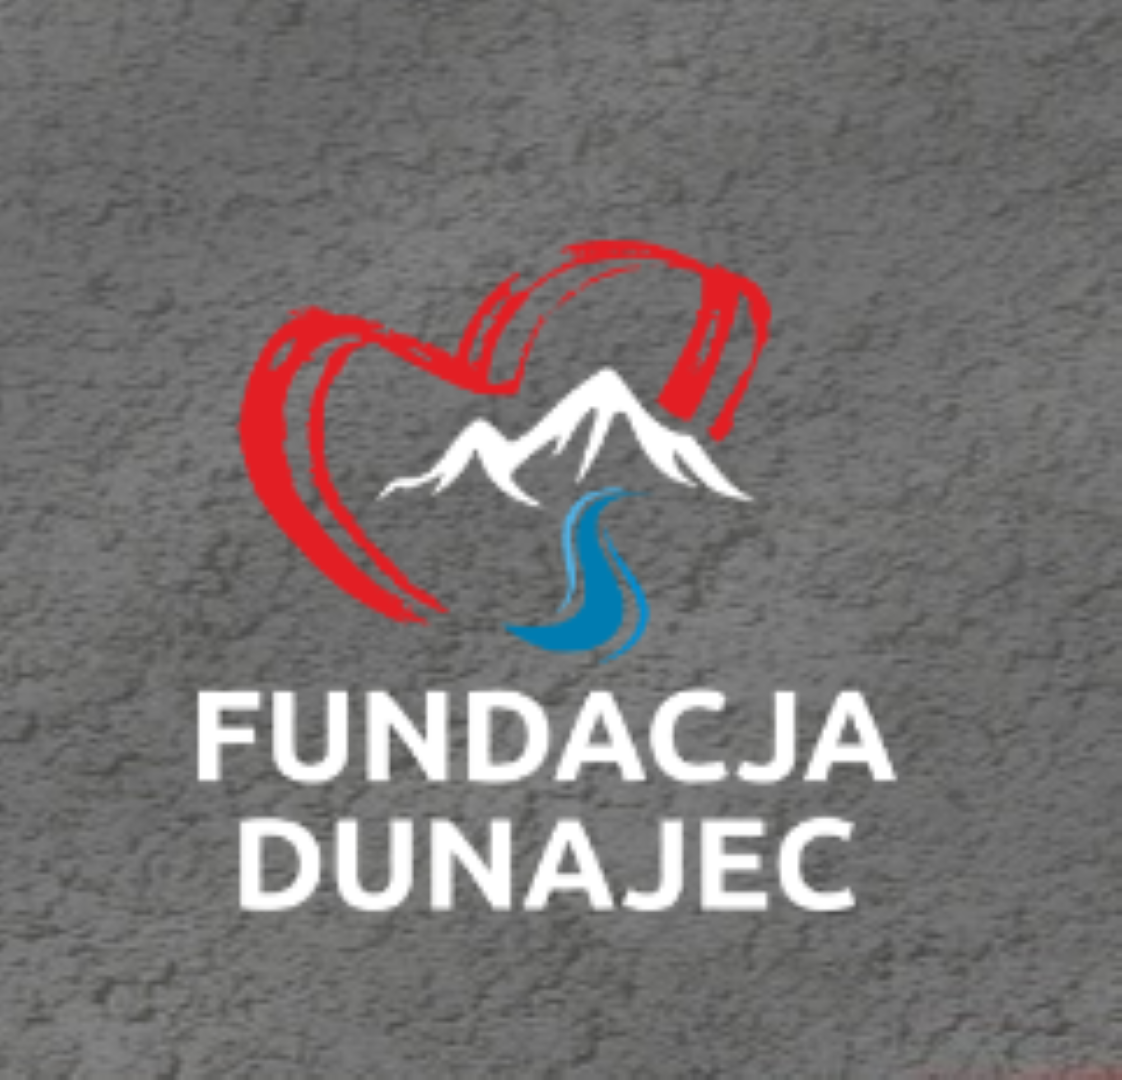 Fundacja Dunajec składa podziękowanie za dotychczasowe wsparcie